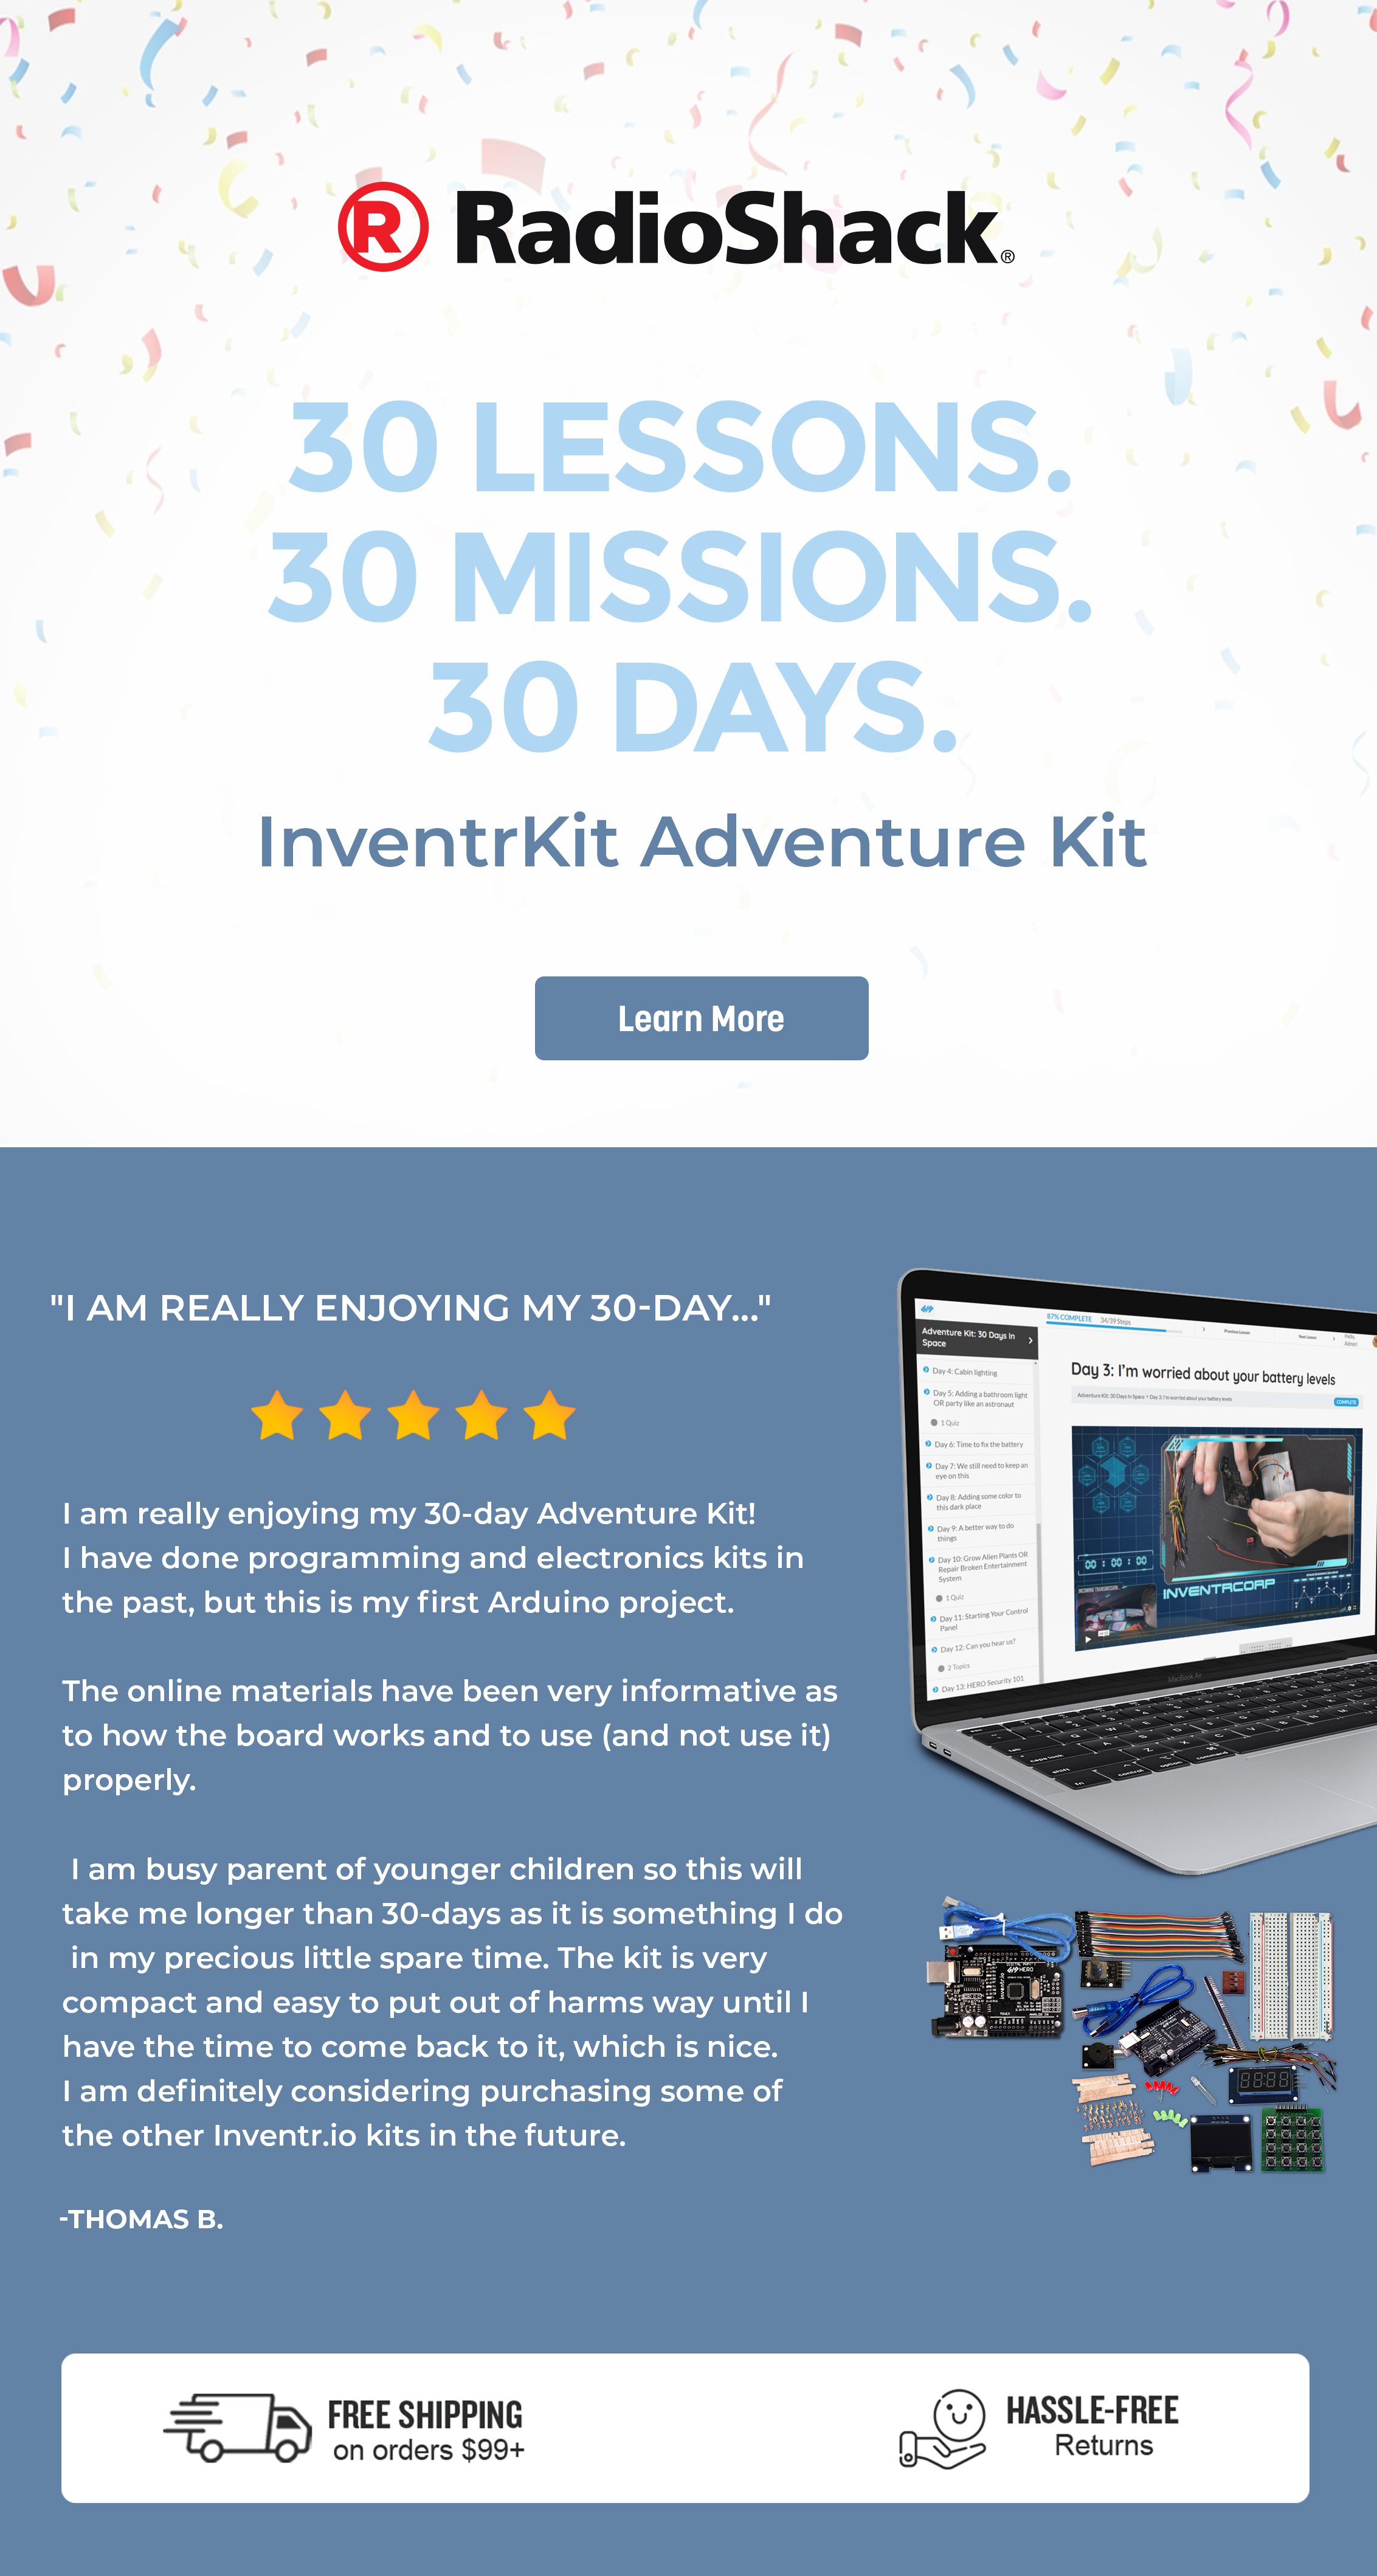 InventrKit Adventure Kit